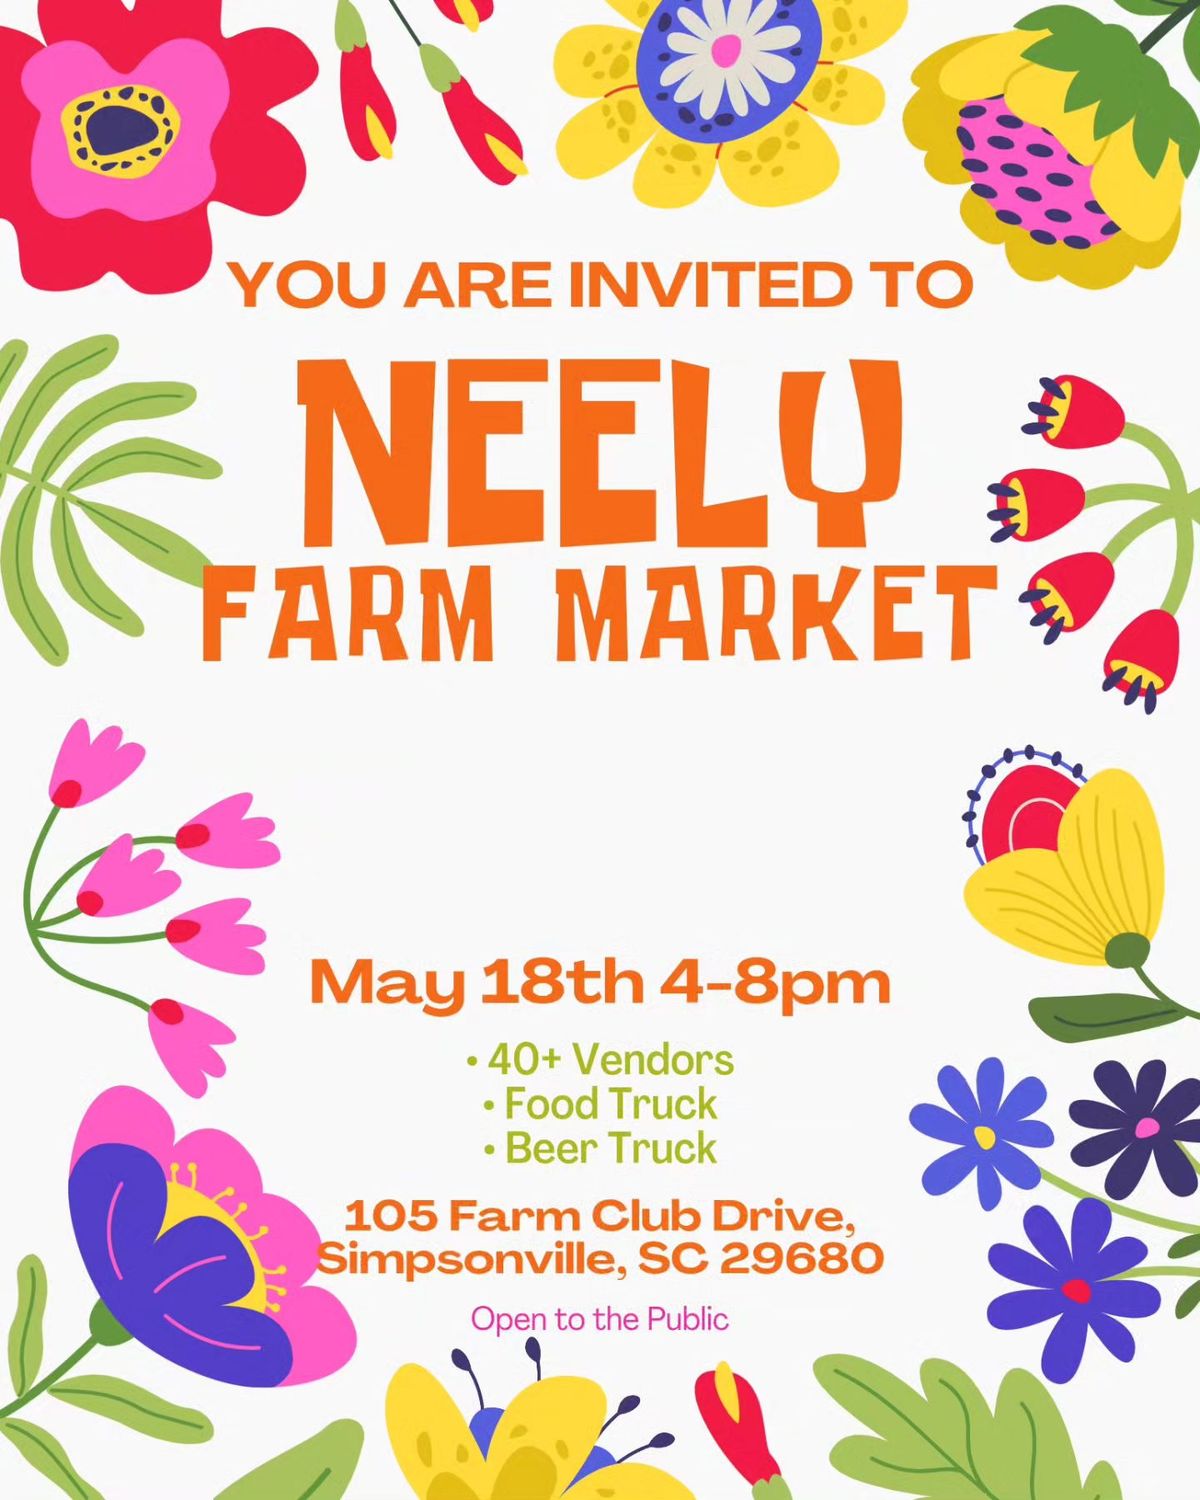 Neely Farm Market - May